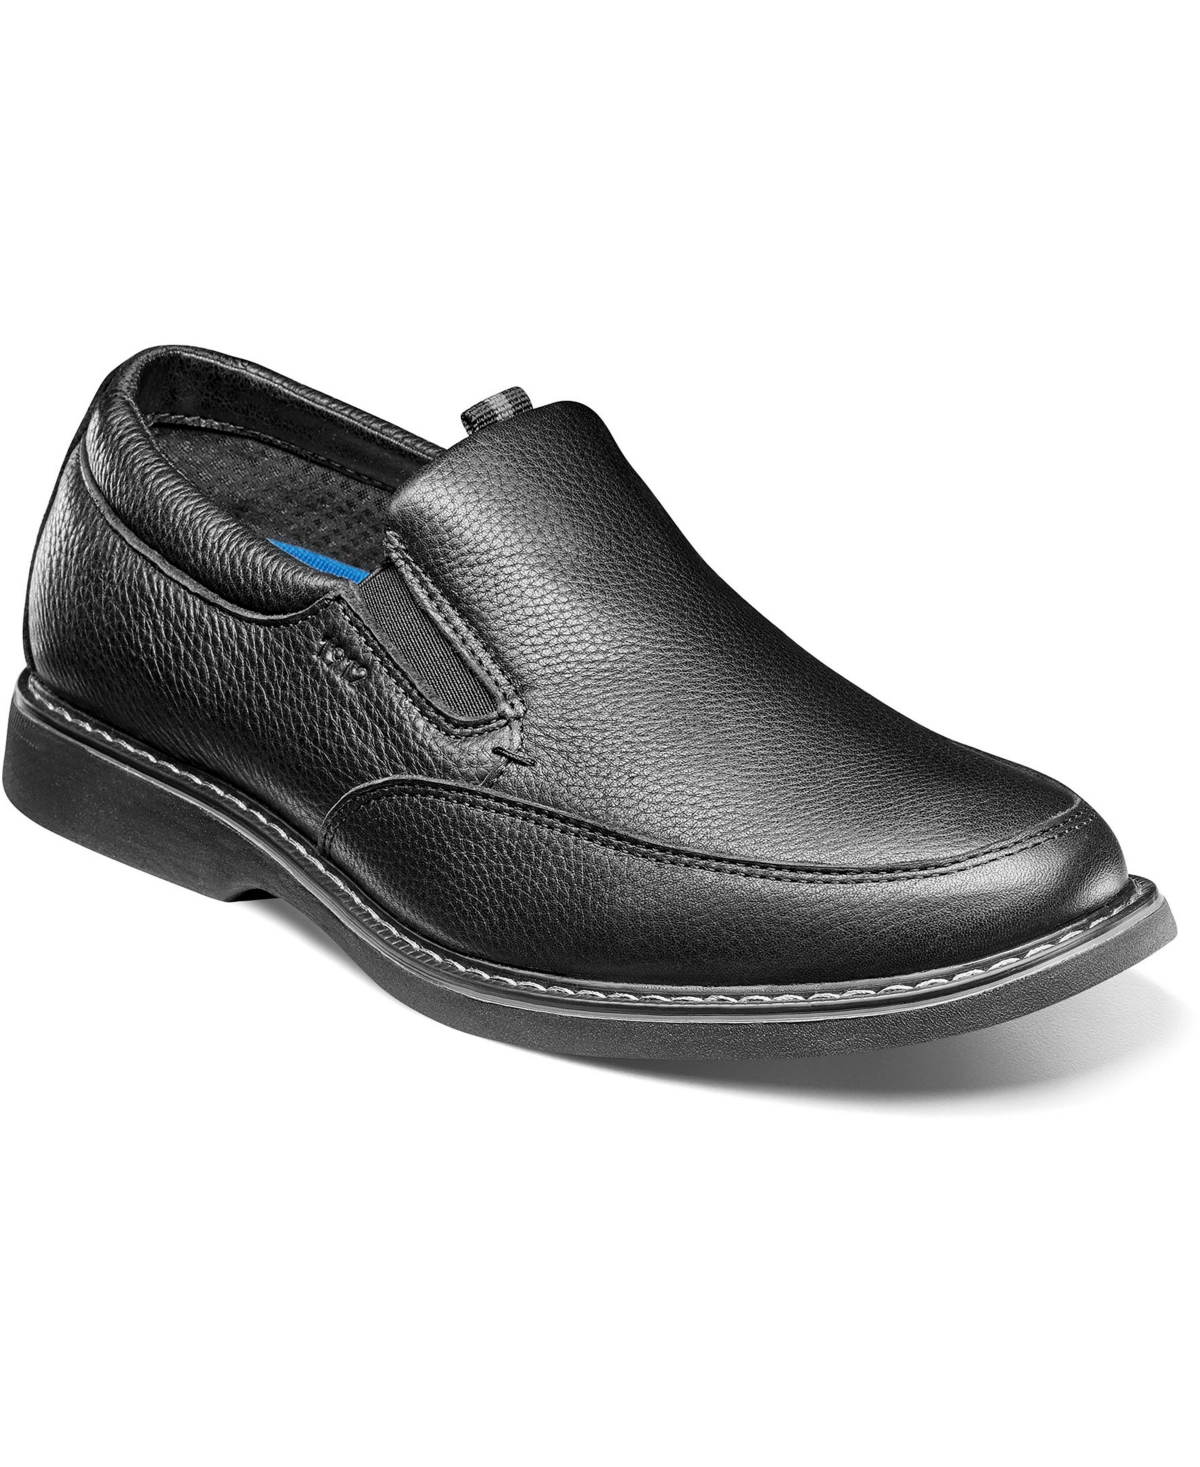 Men's Otto Moc Toe Slip On Shoes - Black Tumble